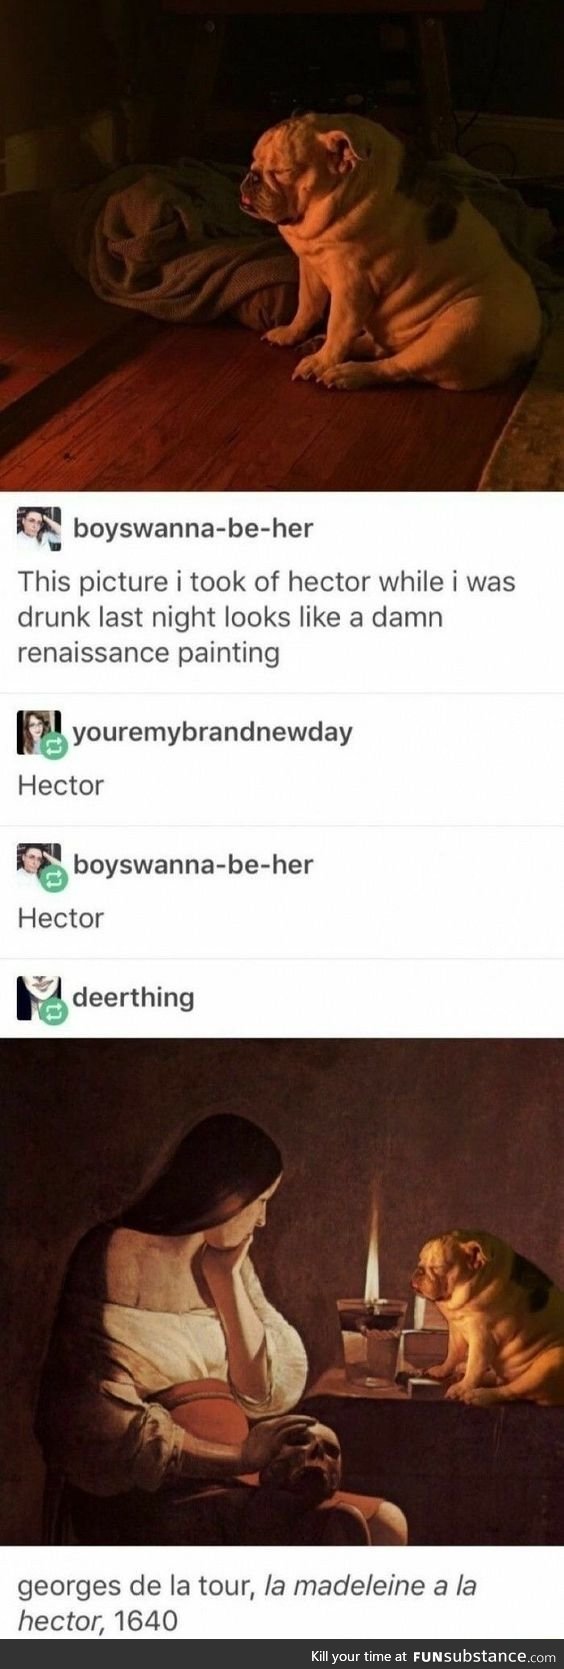 Hector~